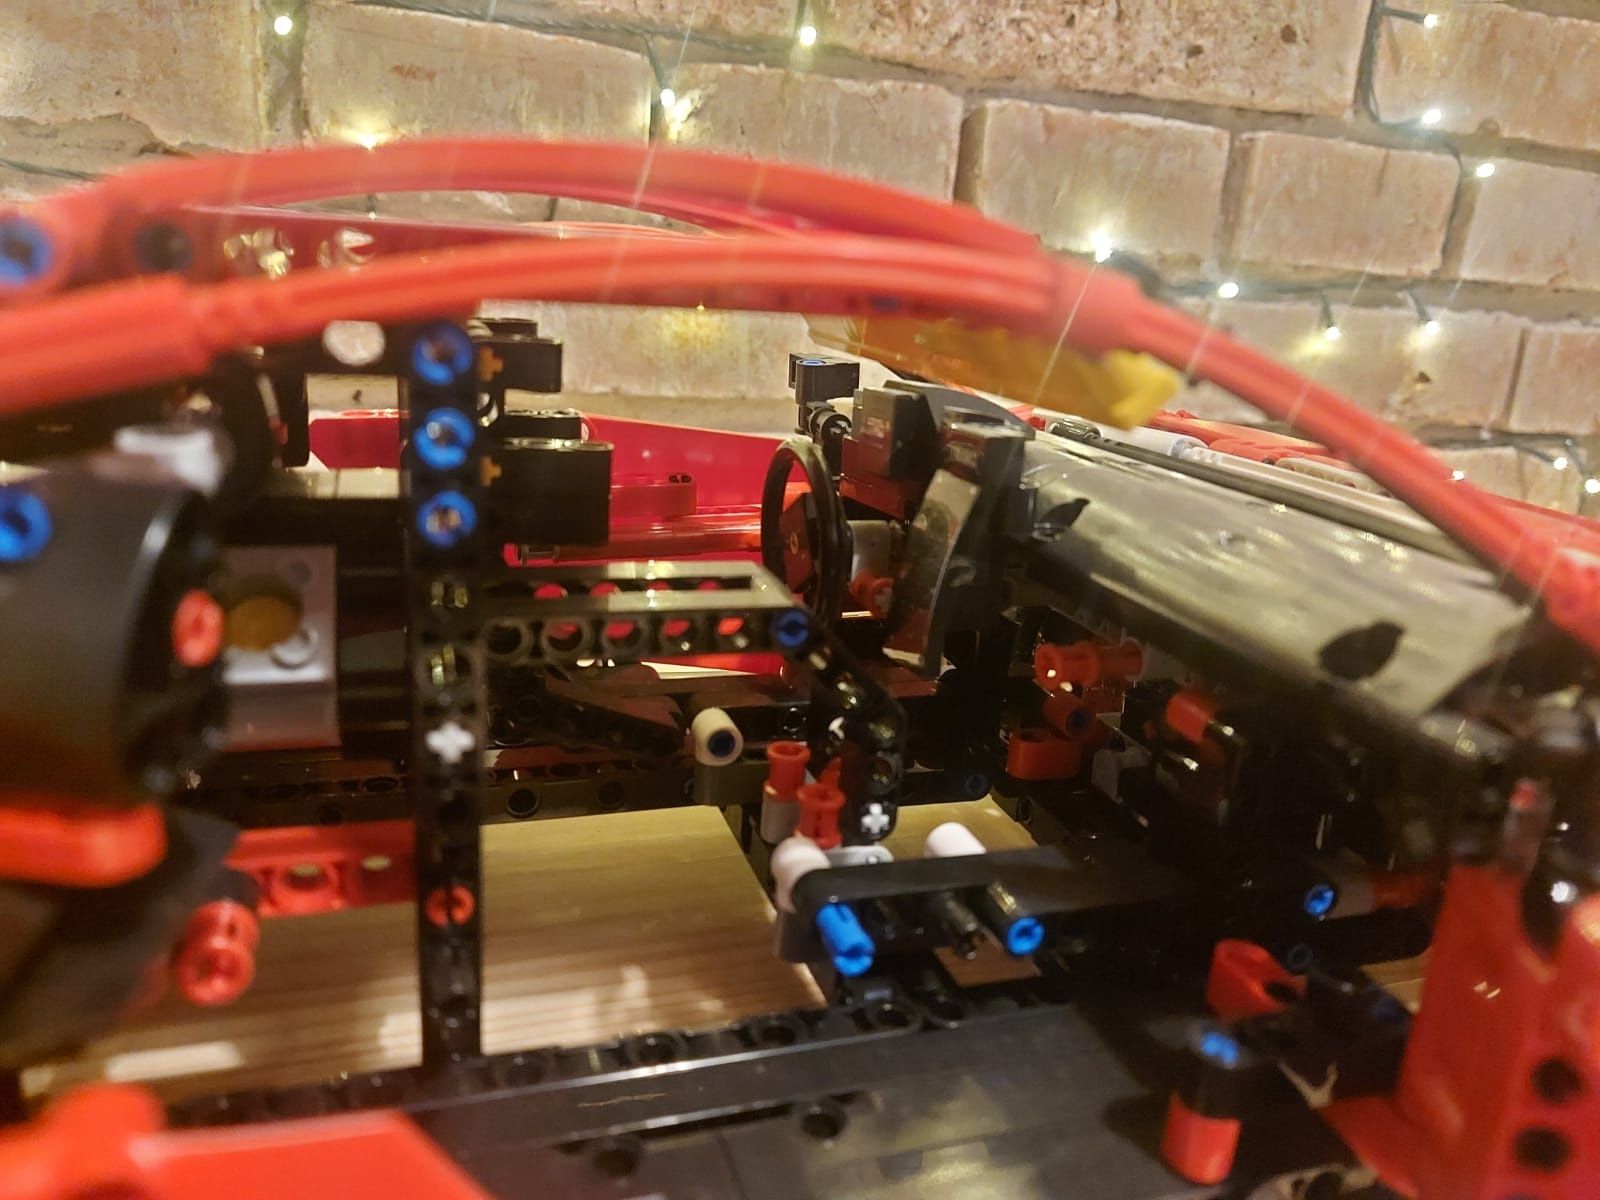 LEGO 42125 Ferrari 488 GTE